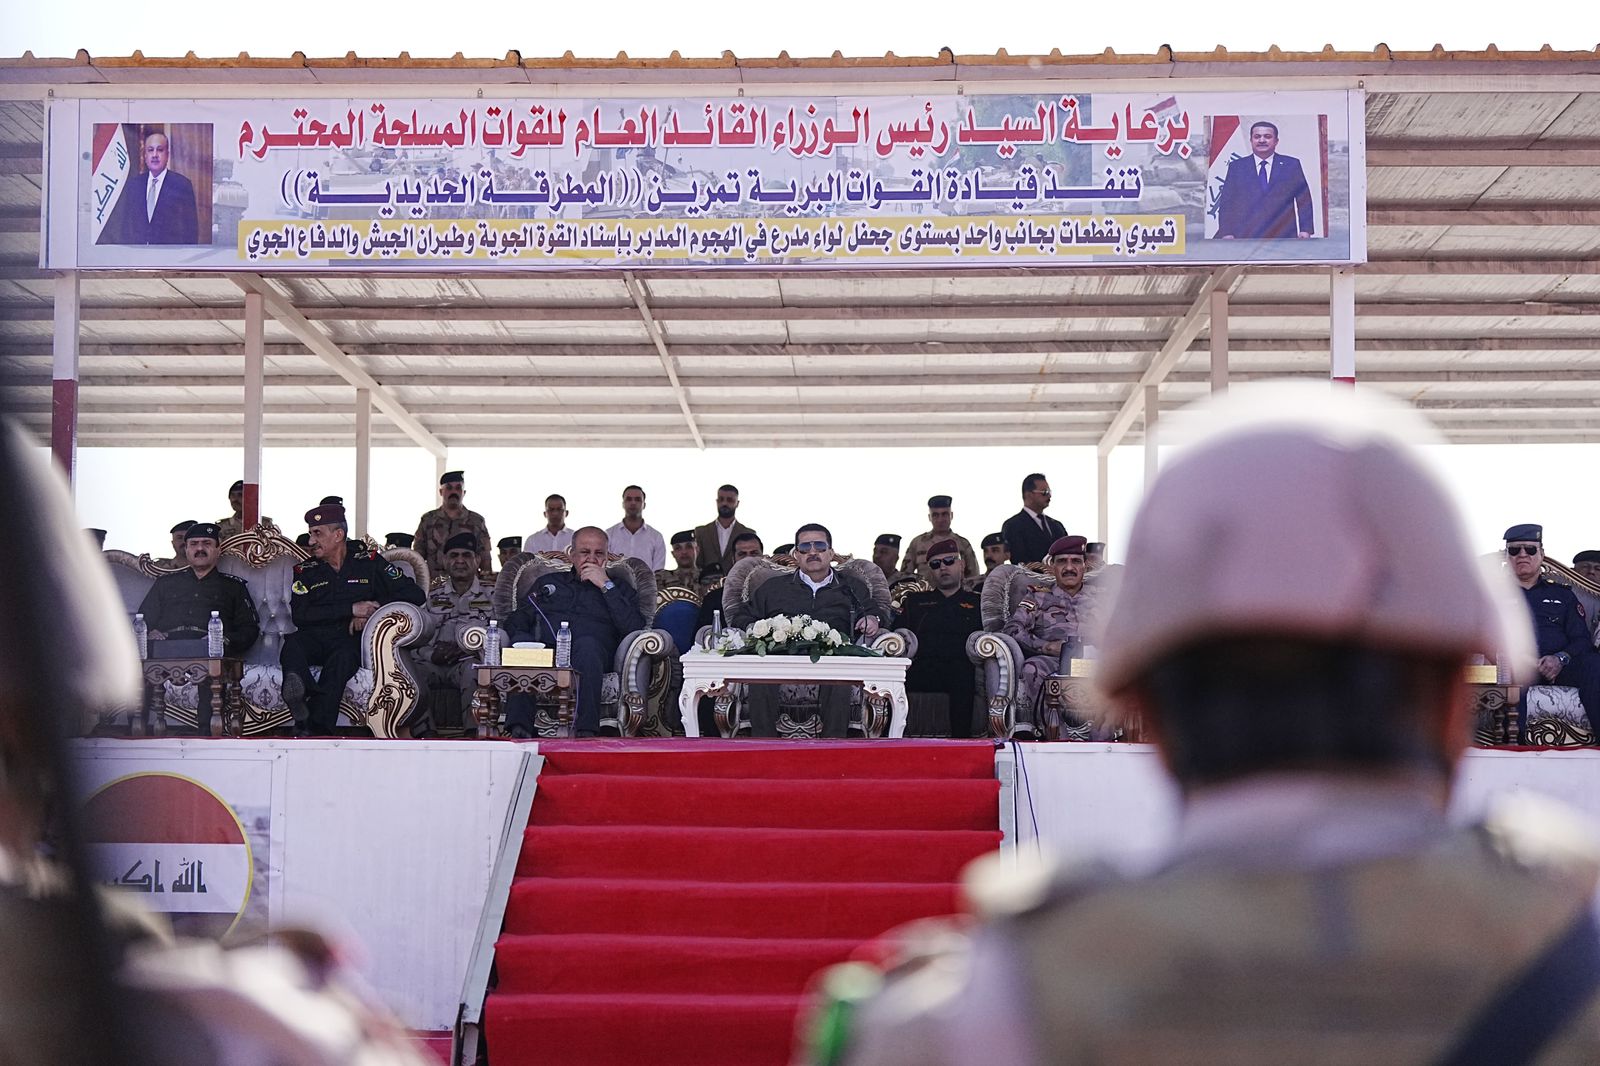 خلال تمرين (المطرقة الحديدية).. السوداني يتحرك لتطوير وتسليح الجيش العراقي ويوجه بأخذ الحيطة